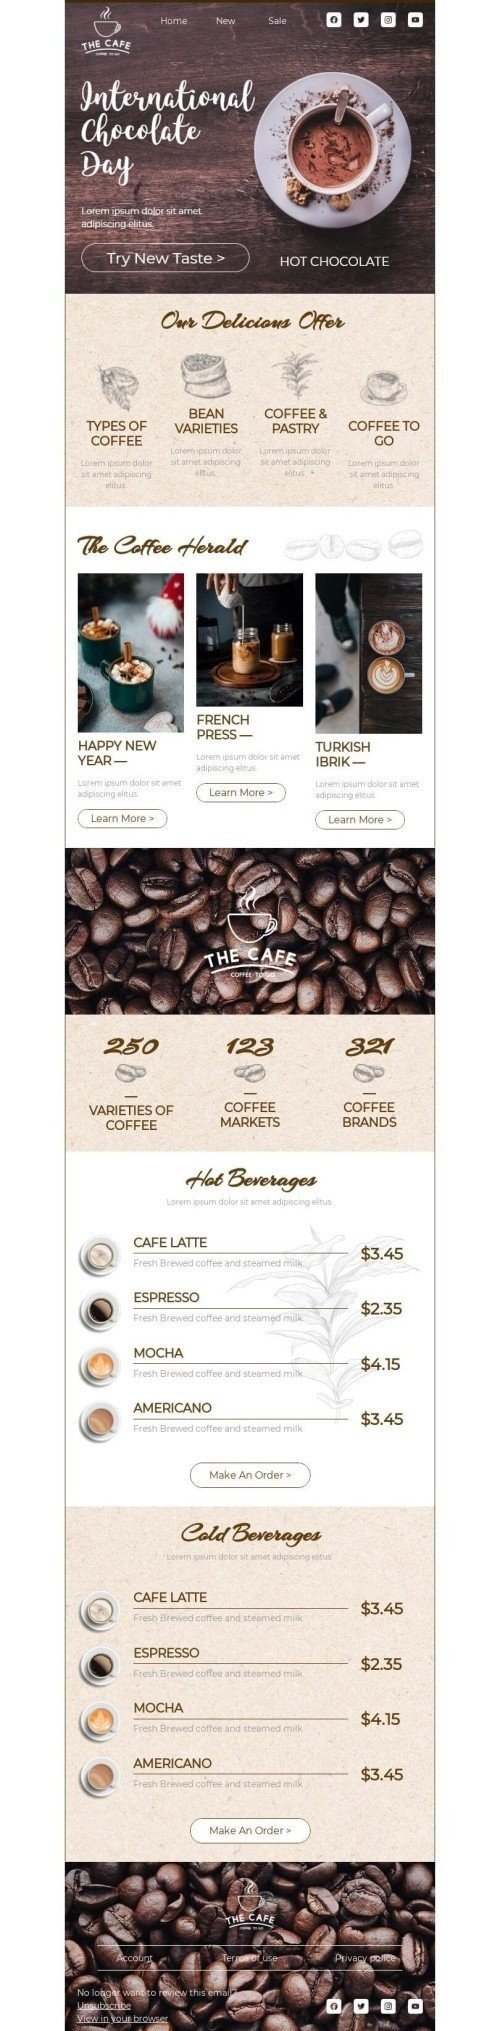 Modelo de E-mail de «Experimente um novo sabor» de Dia Internacional do Chocolate para a indústria de Bebidas Visualização de dispositivo móvel